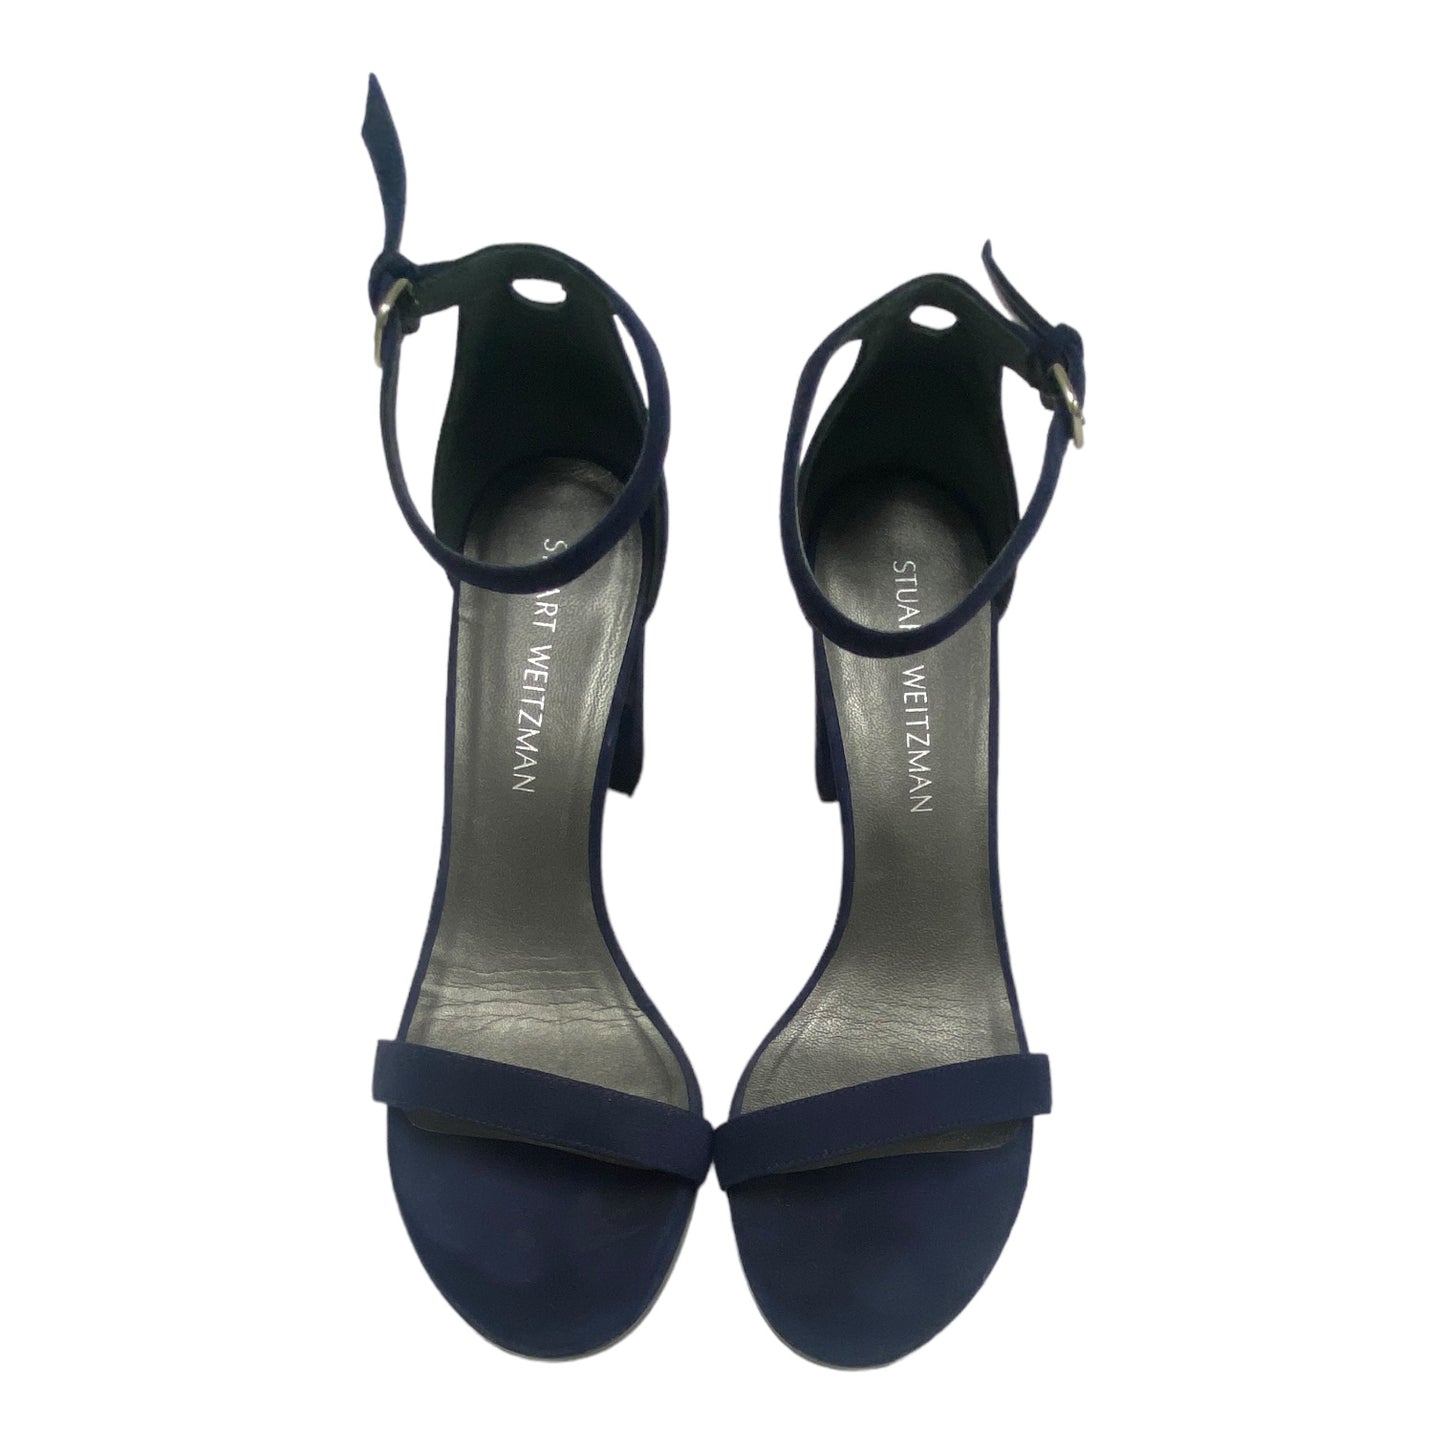 Sandals Heels Block By Stuart Weitzman  Size: 8.5